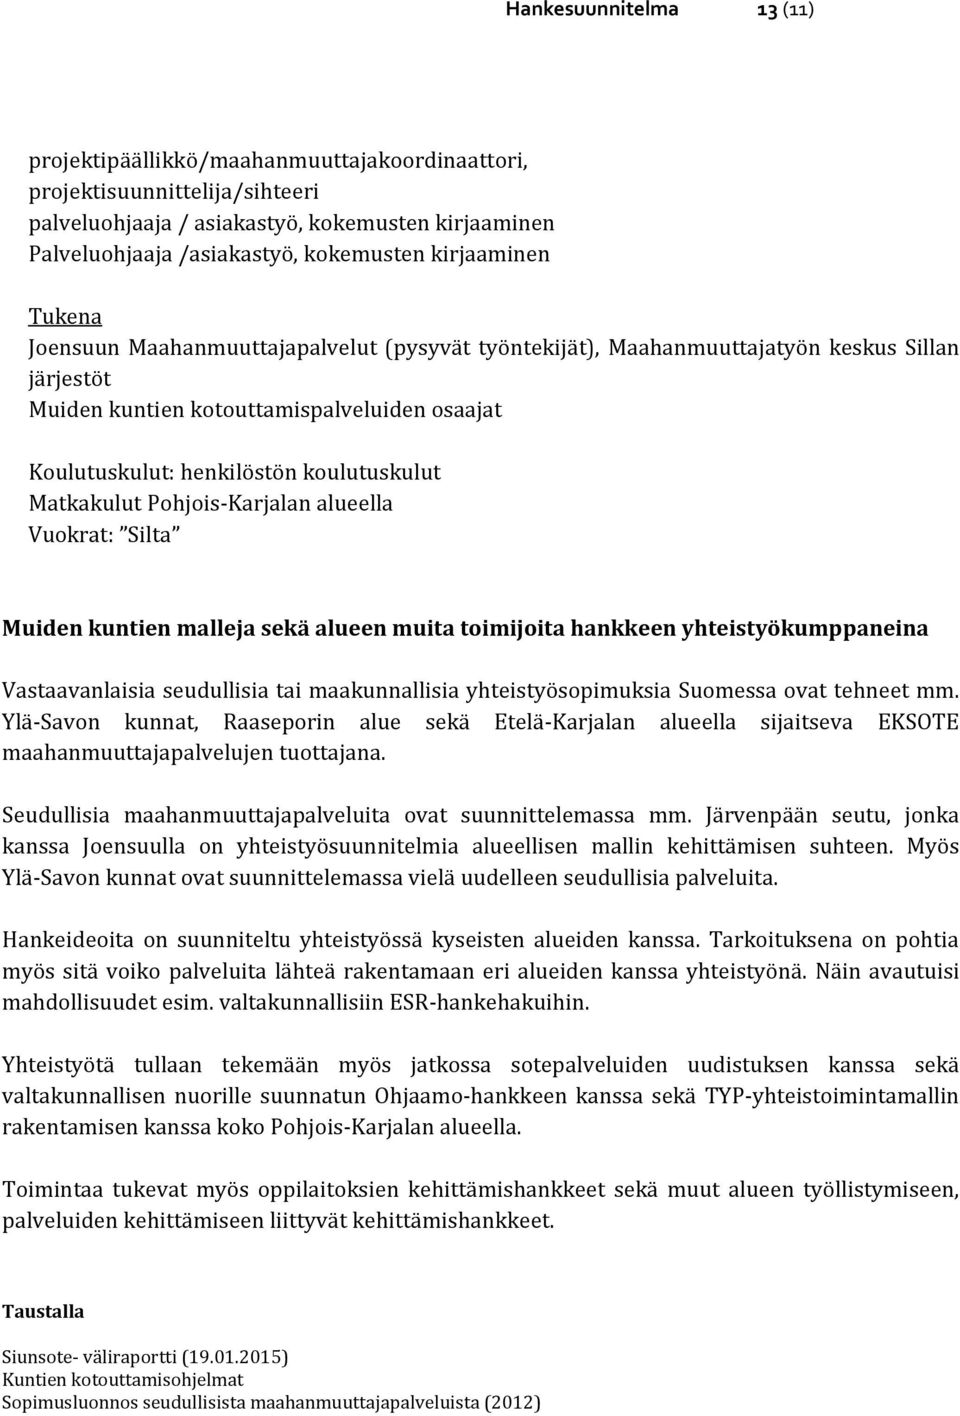 koulutuskulut Matkakulut Pohjois-Karjalan alueella Vuokrat: Silta Muiden kuntien malleja sekä alueen muita toimijoita hankkeen yhteistyökumppaneina Vastaavanlaisia seudullisia tai maakunnallisia